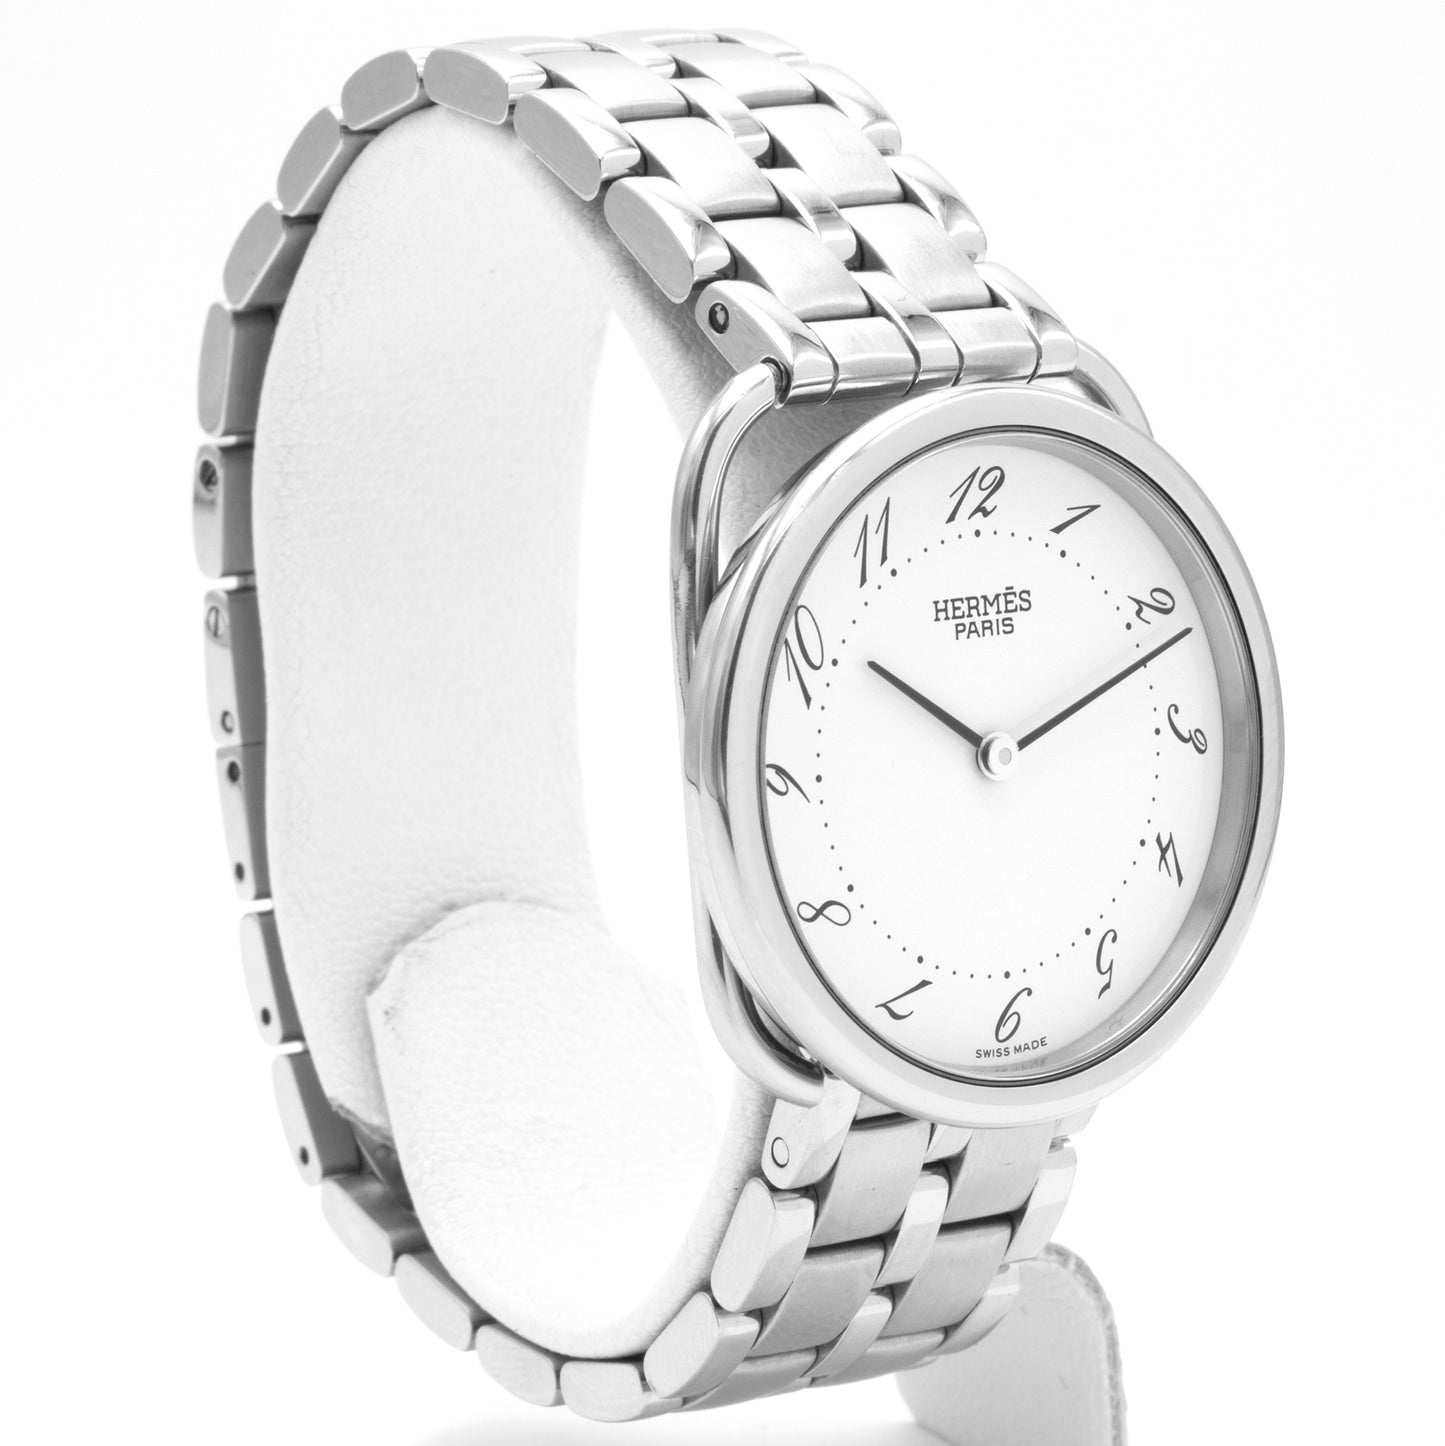 Hermès Arceau 30mm AR4.510 watch